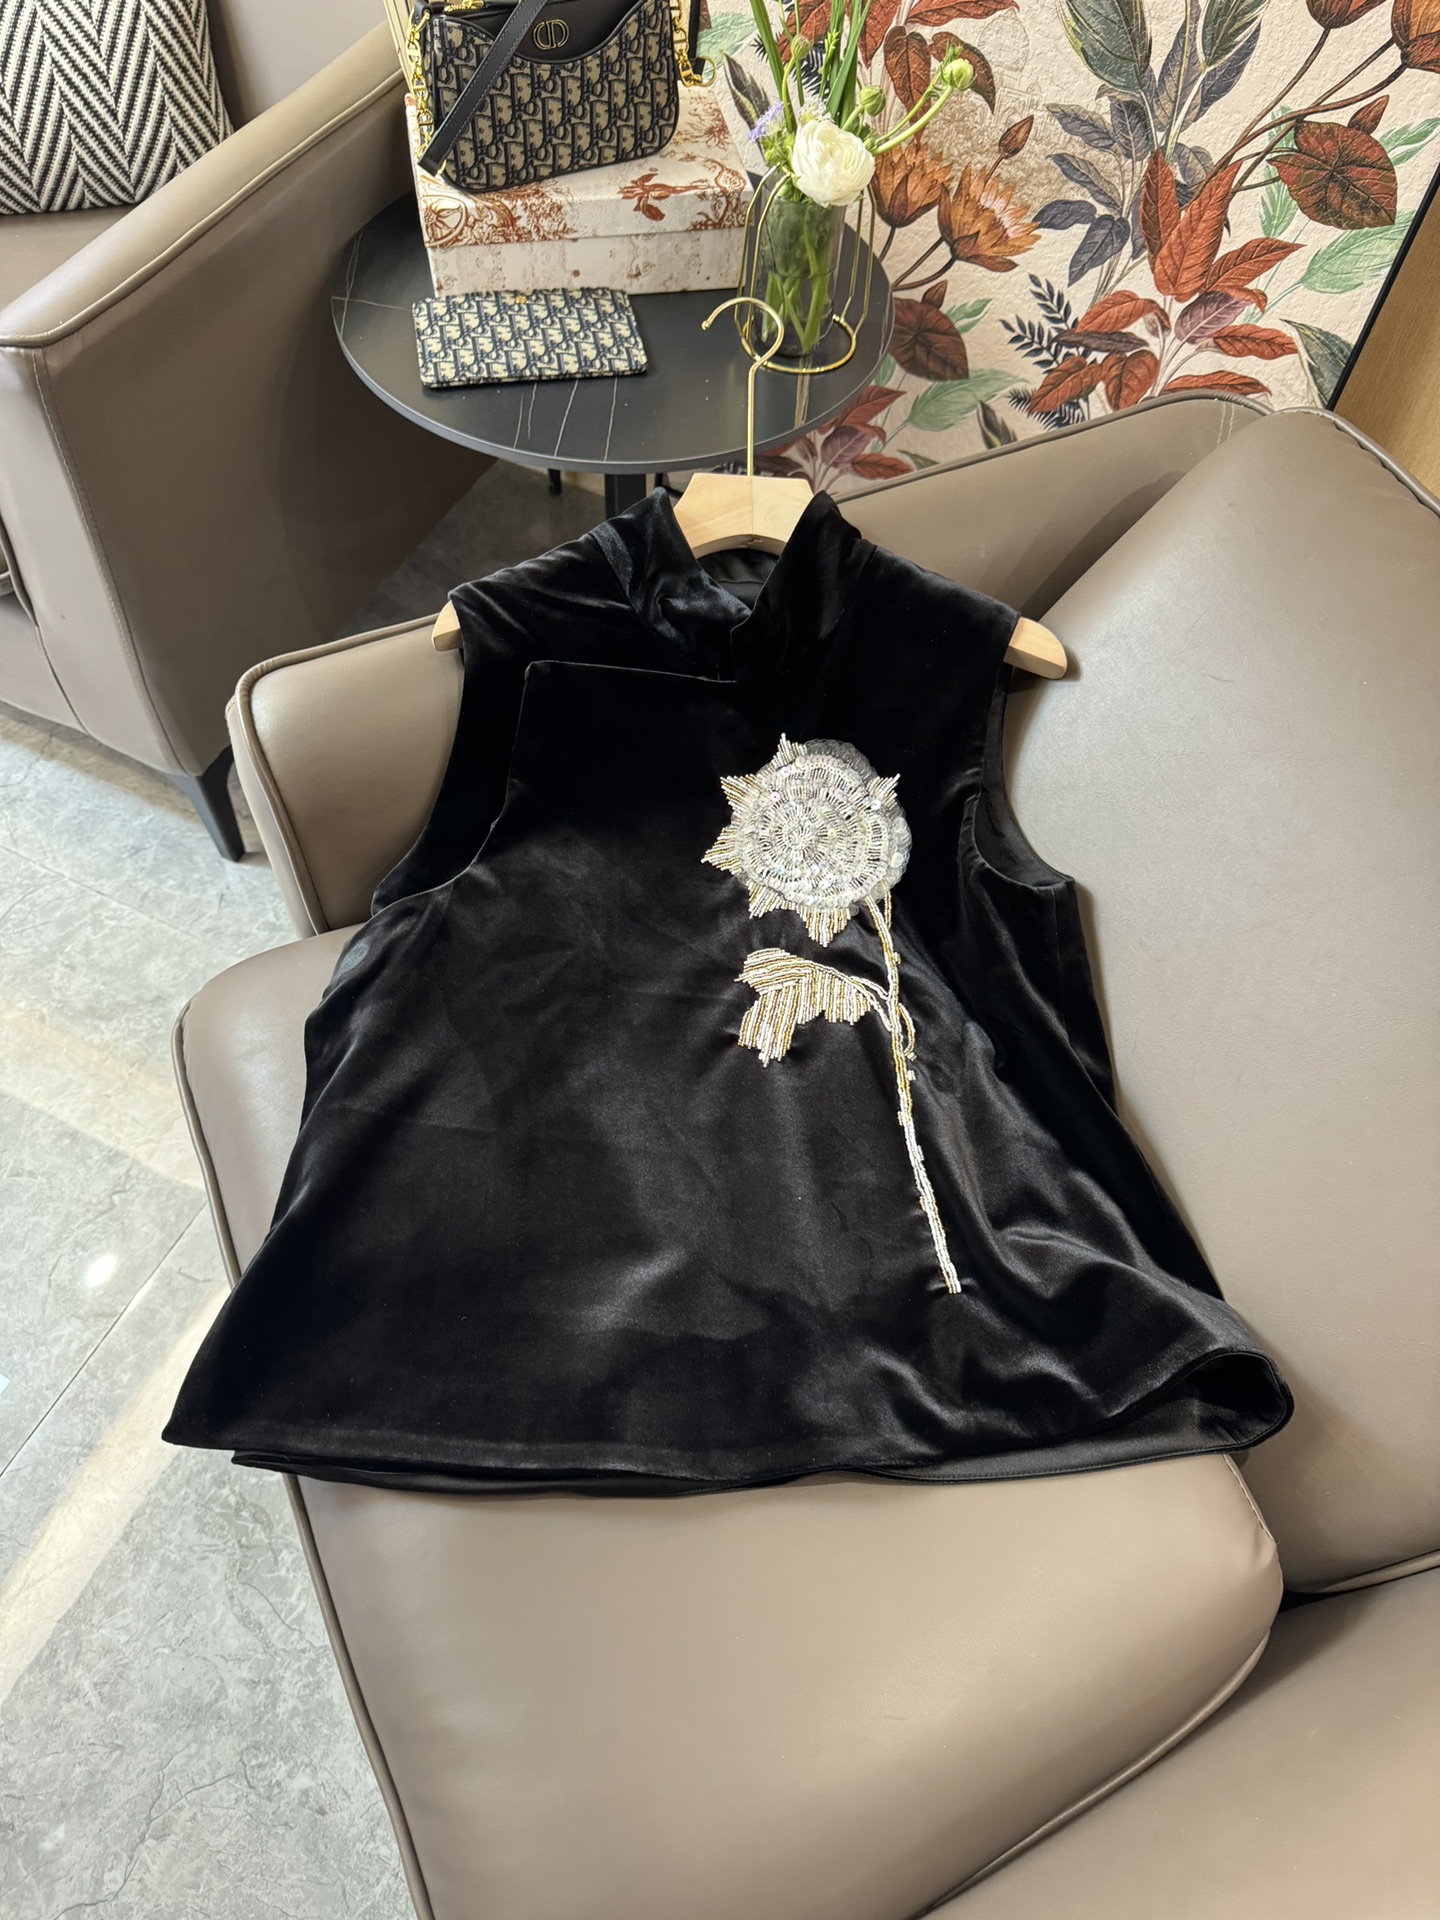 XZ24018#新款套装M新中式珠绣重工真丝绒背心上衣长裤套装黑色SMLXL